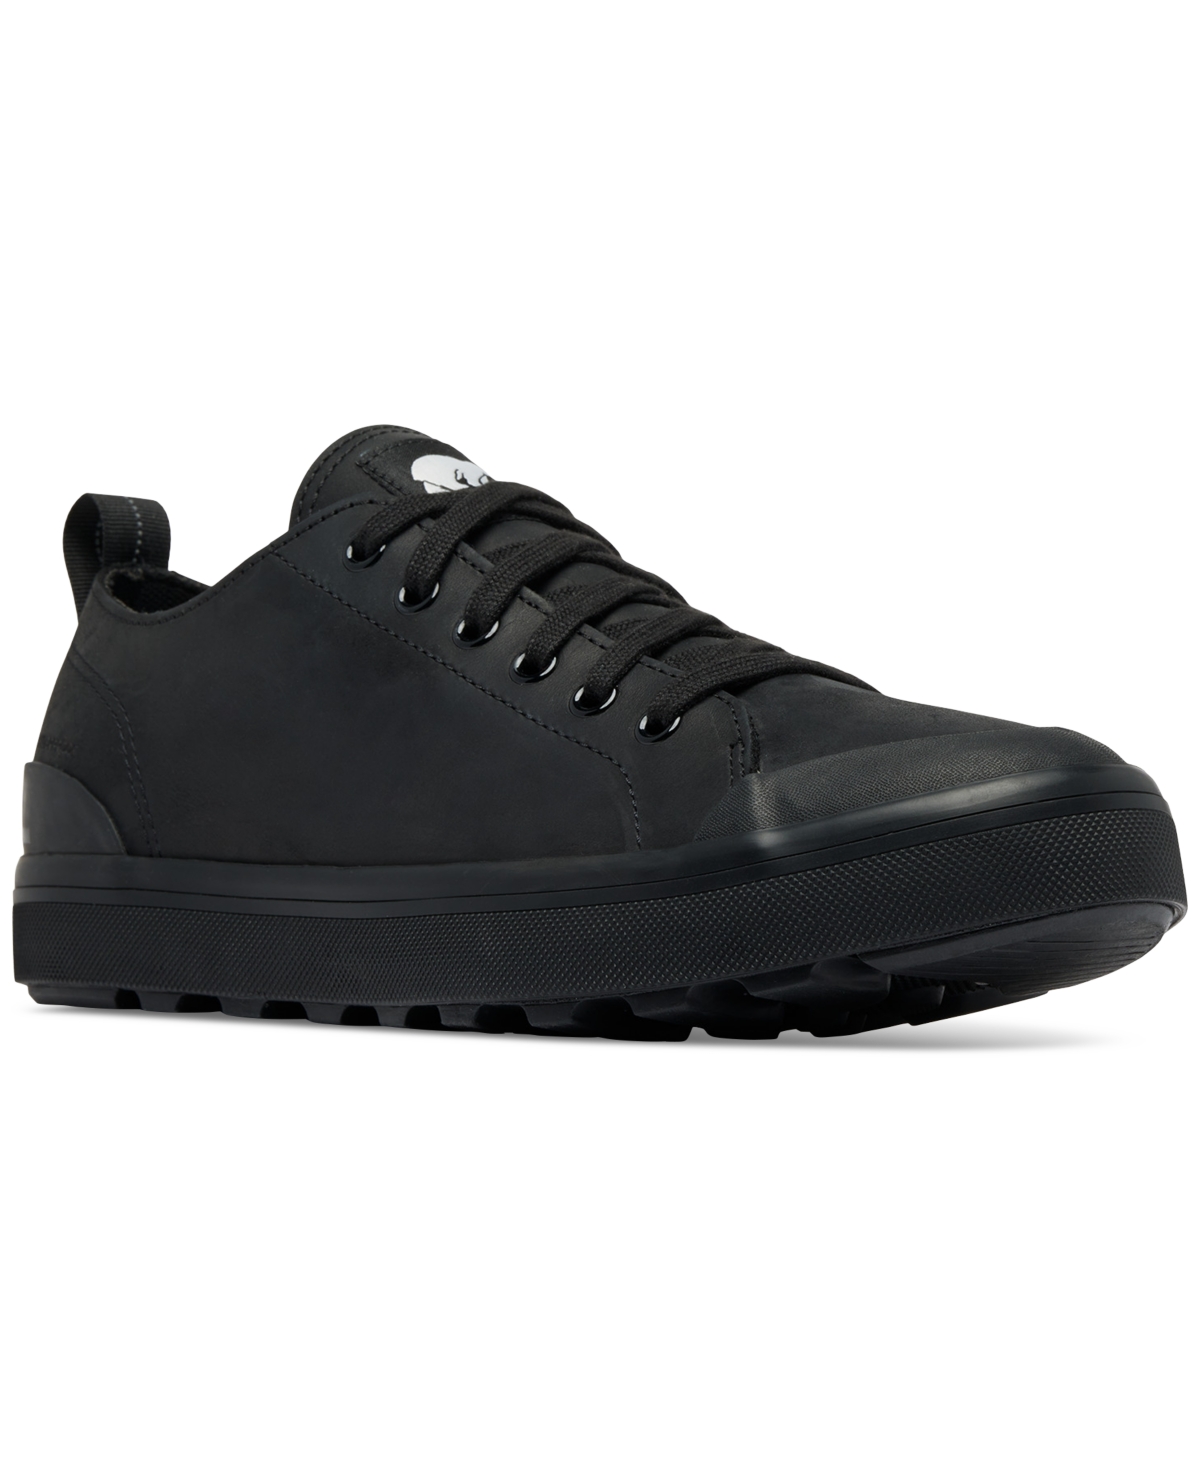 Men's Metro Ii Low Waterproof Lace-Up Sneakers - Black, Sea Salt